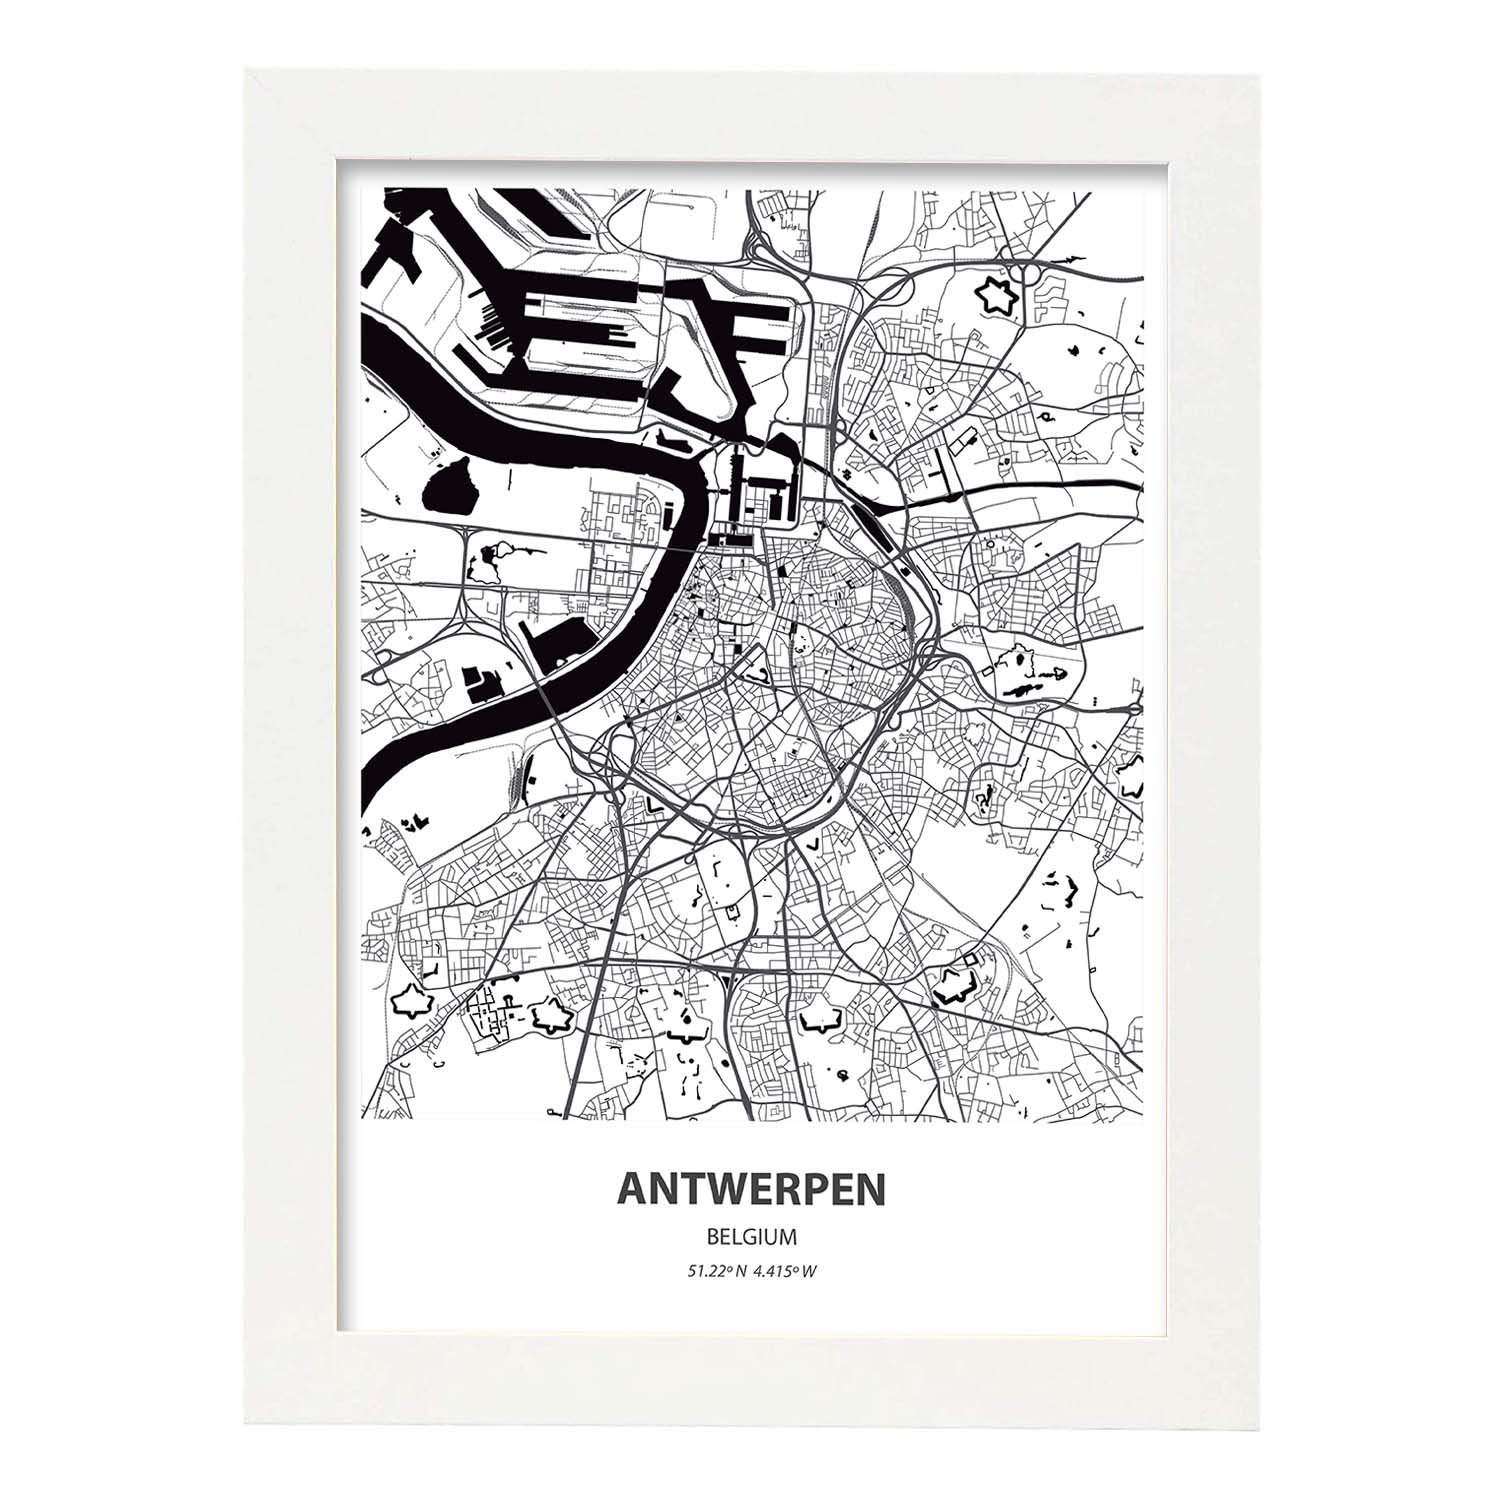 Poster con mapa de Antwerpen - Belgica. Láminas de ciudades de Holanda y Bélgica con mares y ríos en color negro.-Artwork-Nacnic-A4-Marco Blanco-Nacnic Estudio SL